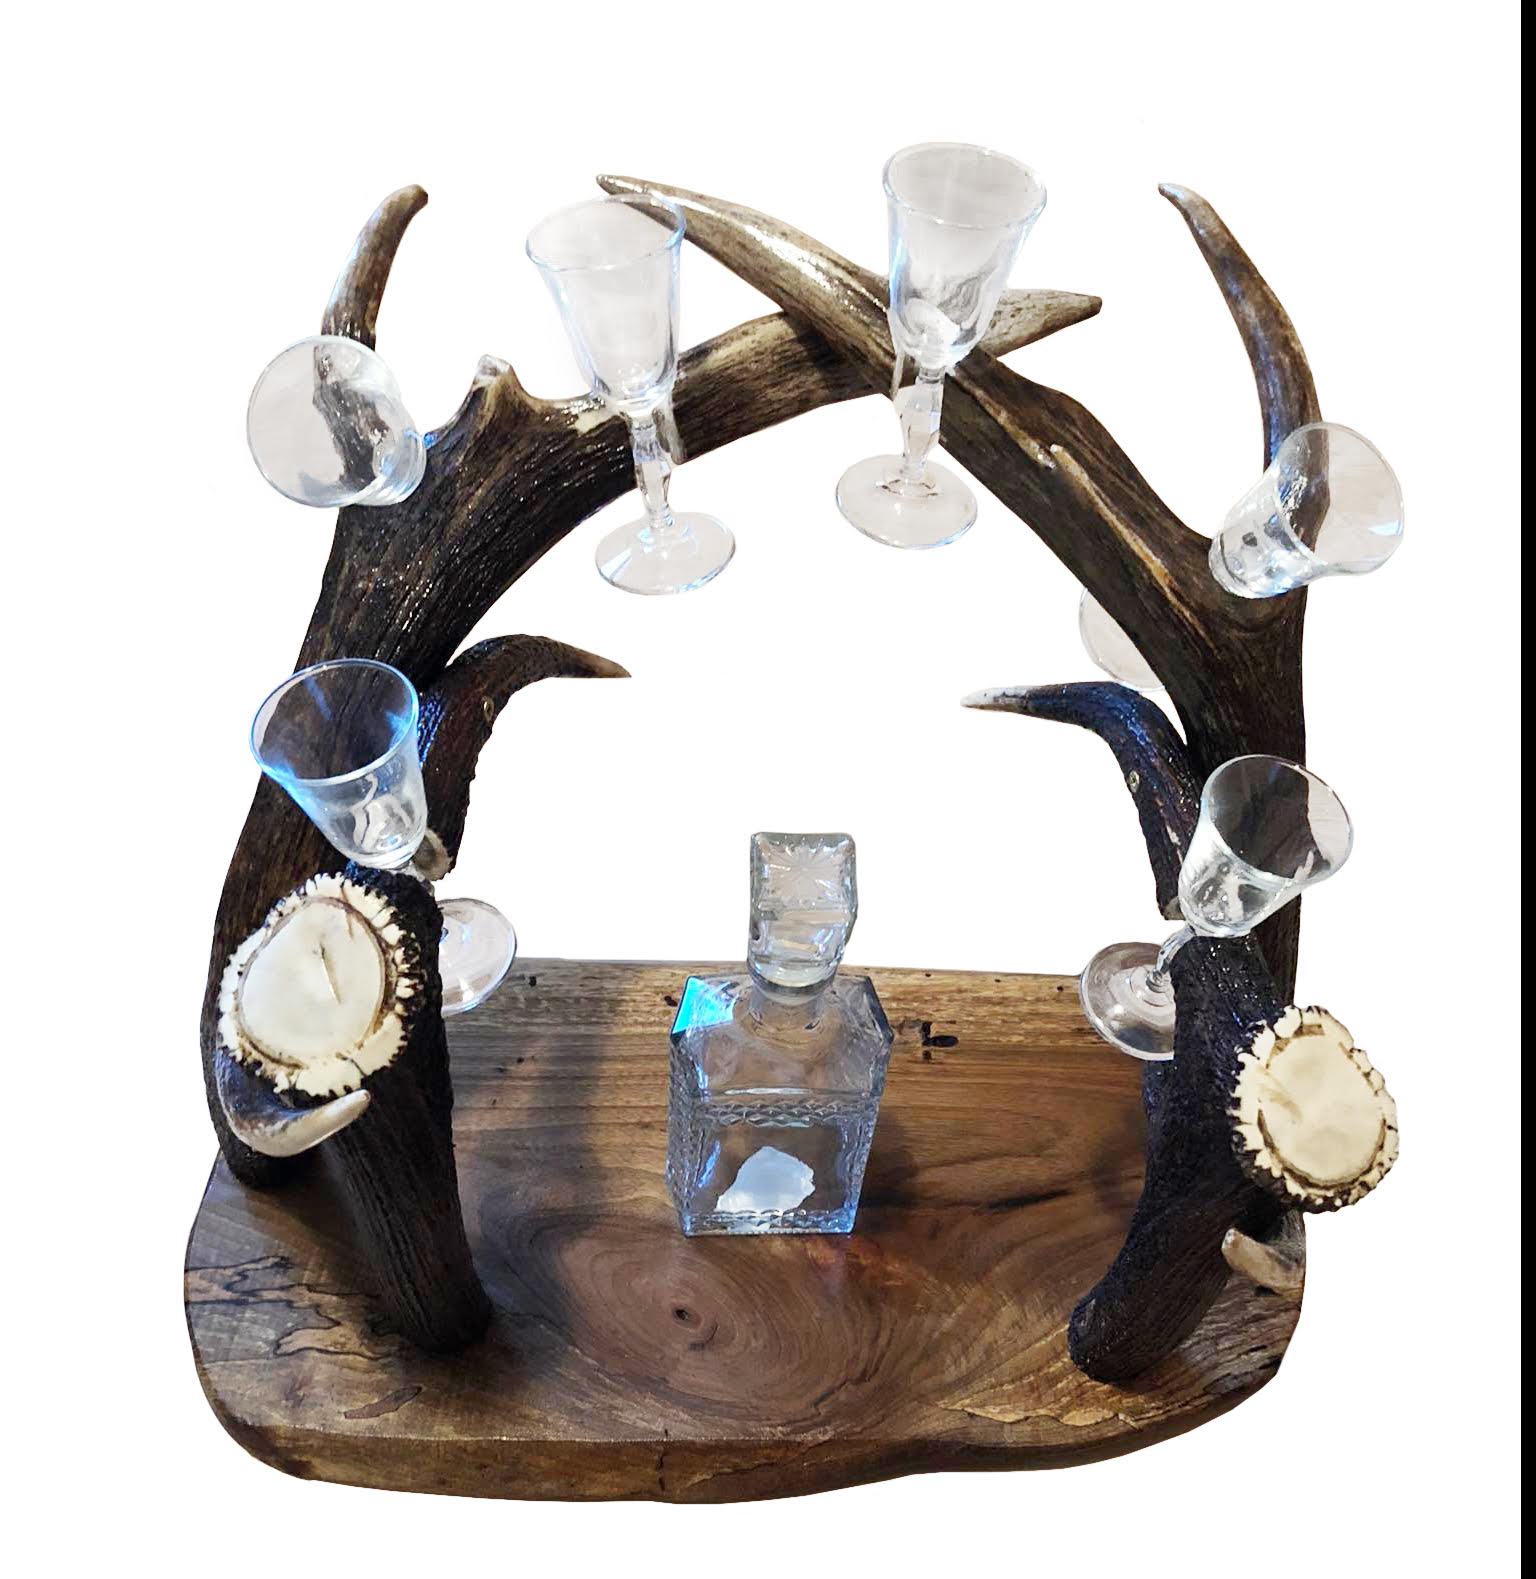 Izrada raznih predmeta od jelenskog rogovlja kao što su kravate, lusteri, lampe, čiviluci, pepeljare, dugmad, set čaša i flaše...Mogućnost izrade predmeta po vašoj želji.